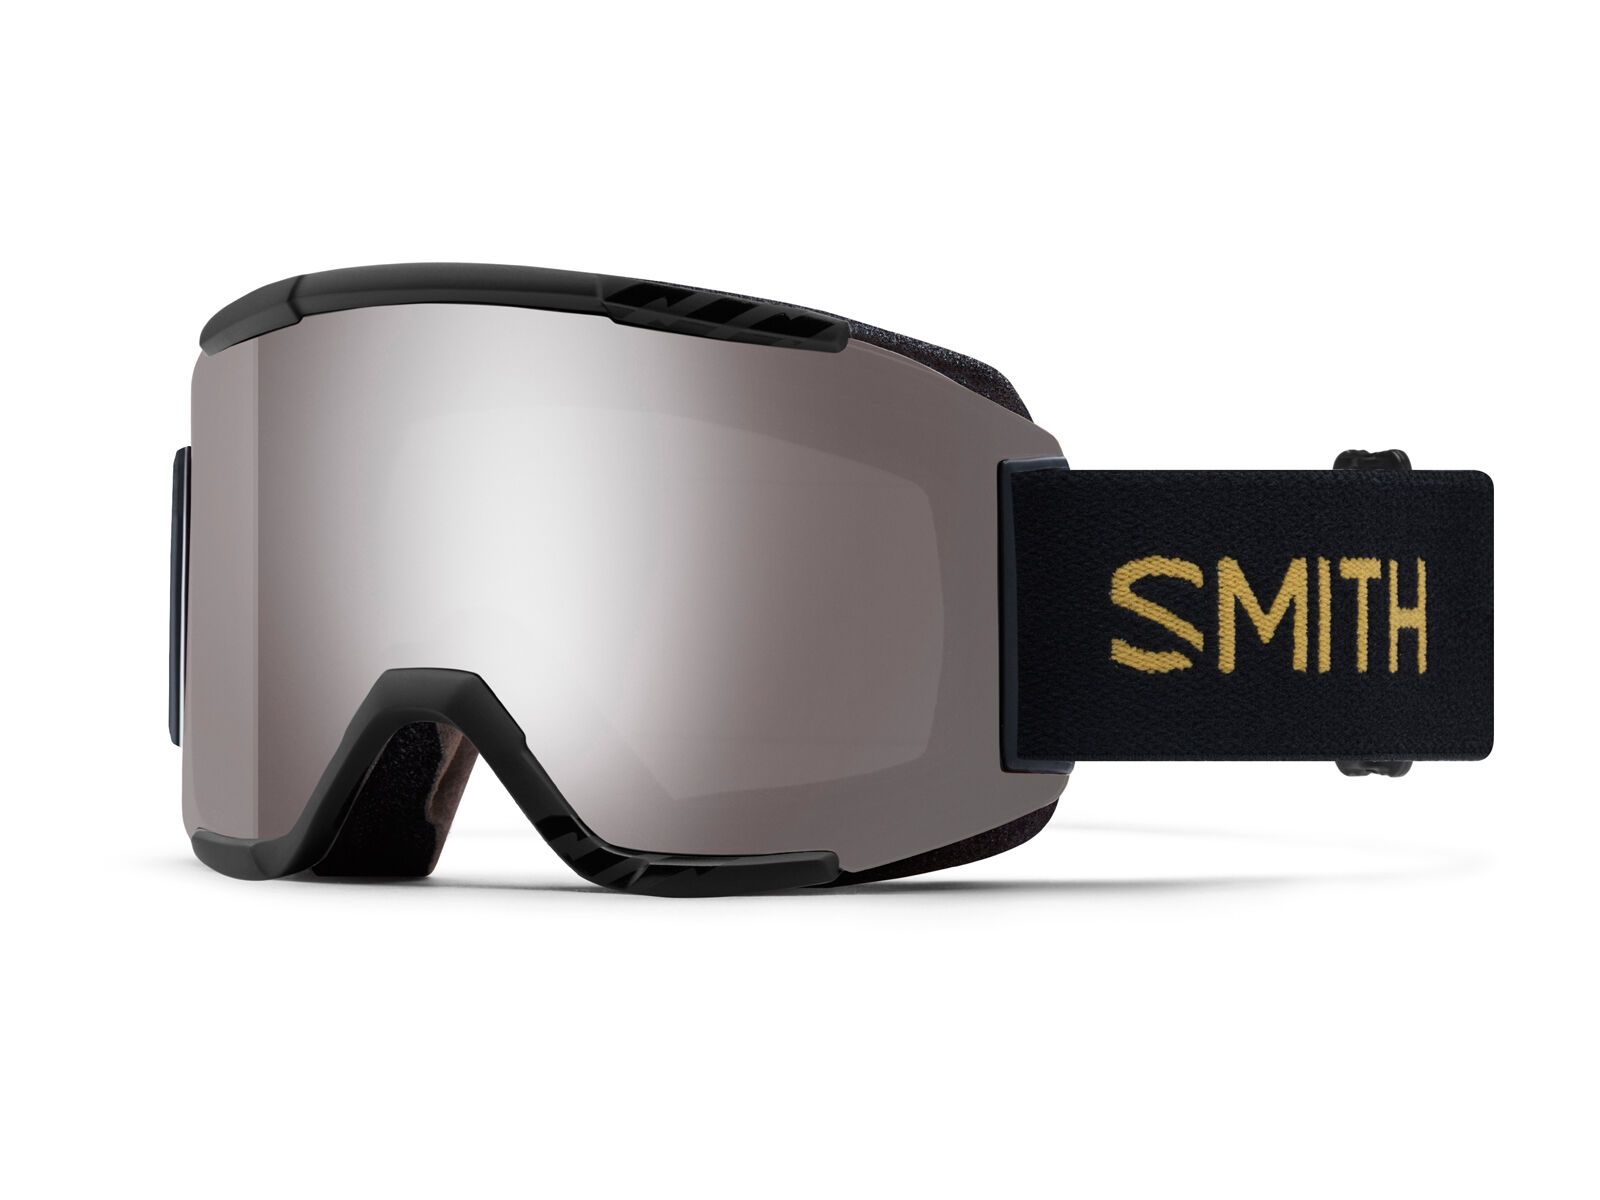 Smith Squad inkl. Wechselscheibe, black firebird/Lens: sun platinum mirror chromapop | Bild 1